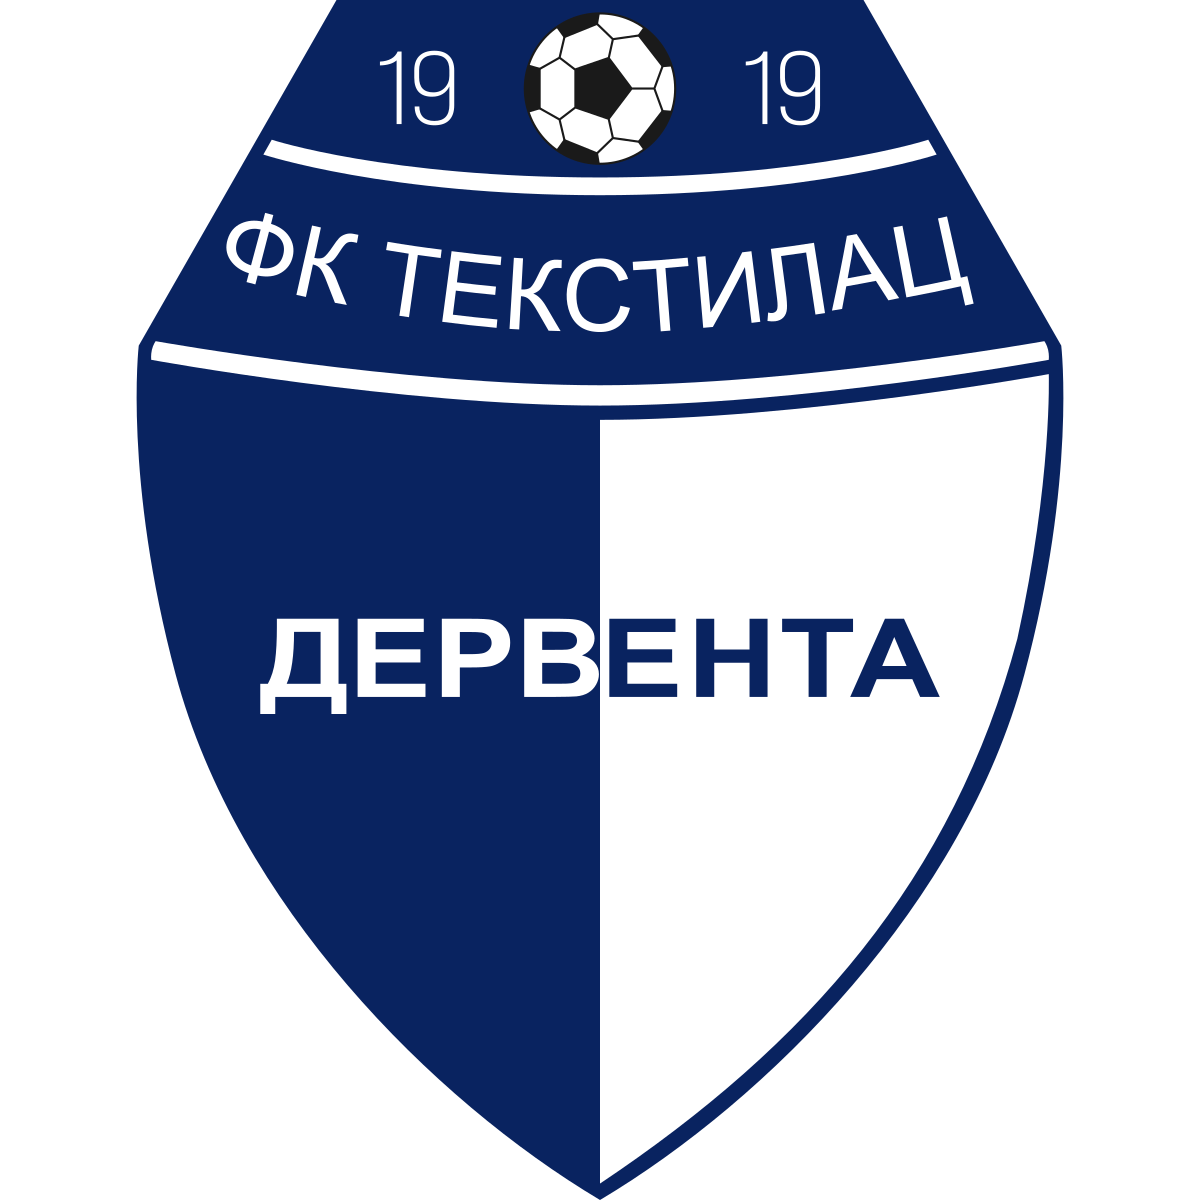 Wappen FK Tekstilac Derventa   12678